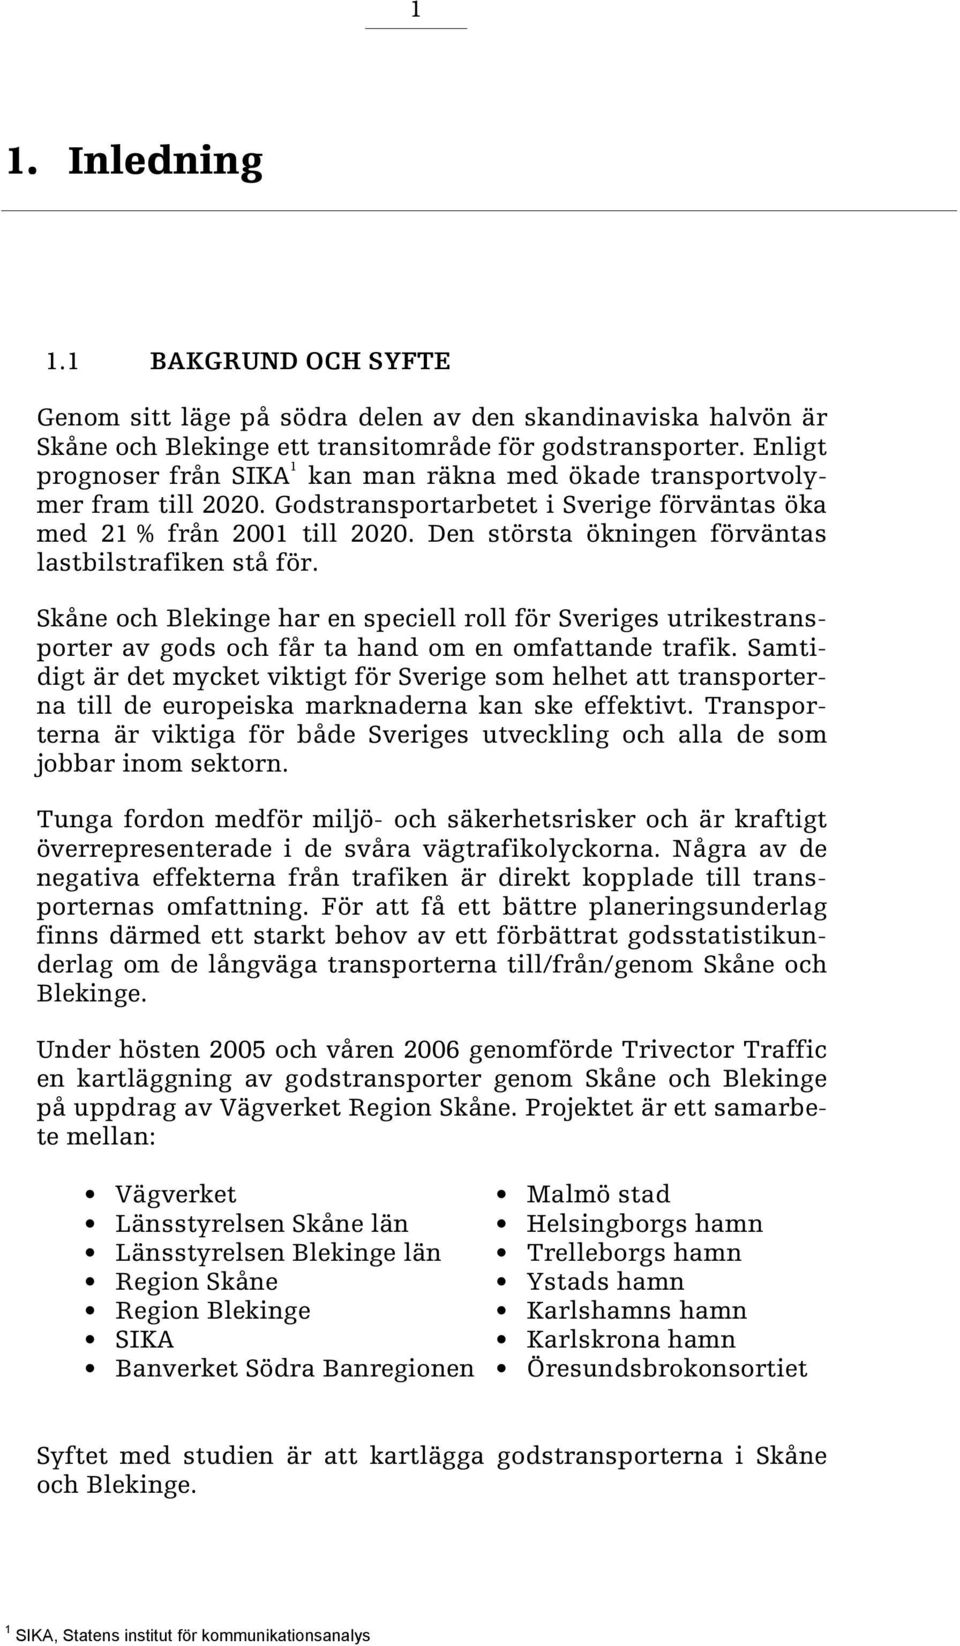 Den största ökningen förväntas lastbilstrafiken stå för. Skåne och Blekinge har en speciell roll för Sveriges utrikestransporter av gods och får ta hand om en omfattande trafik.